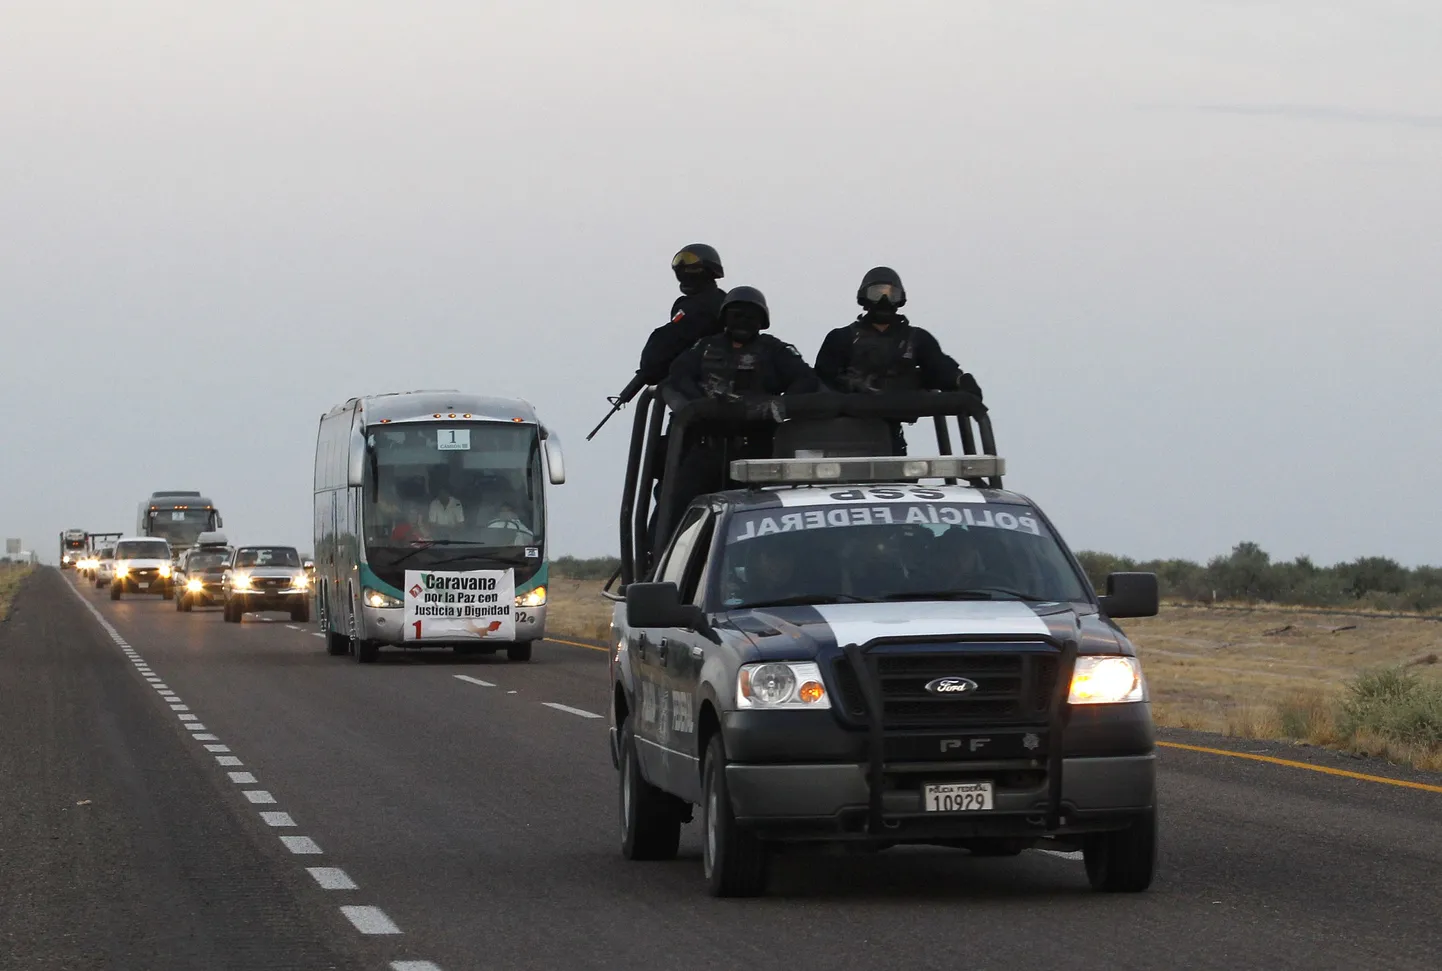 Мексиканская полиция